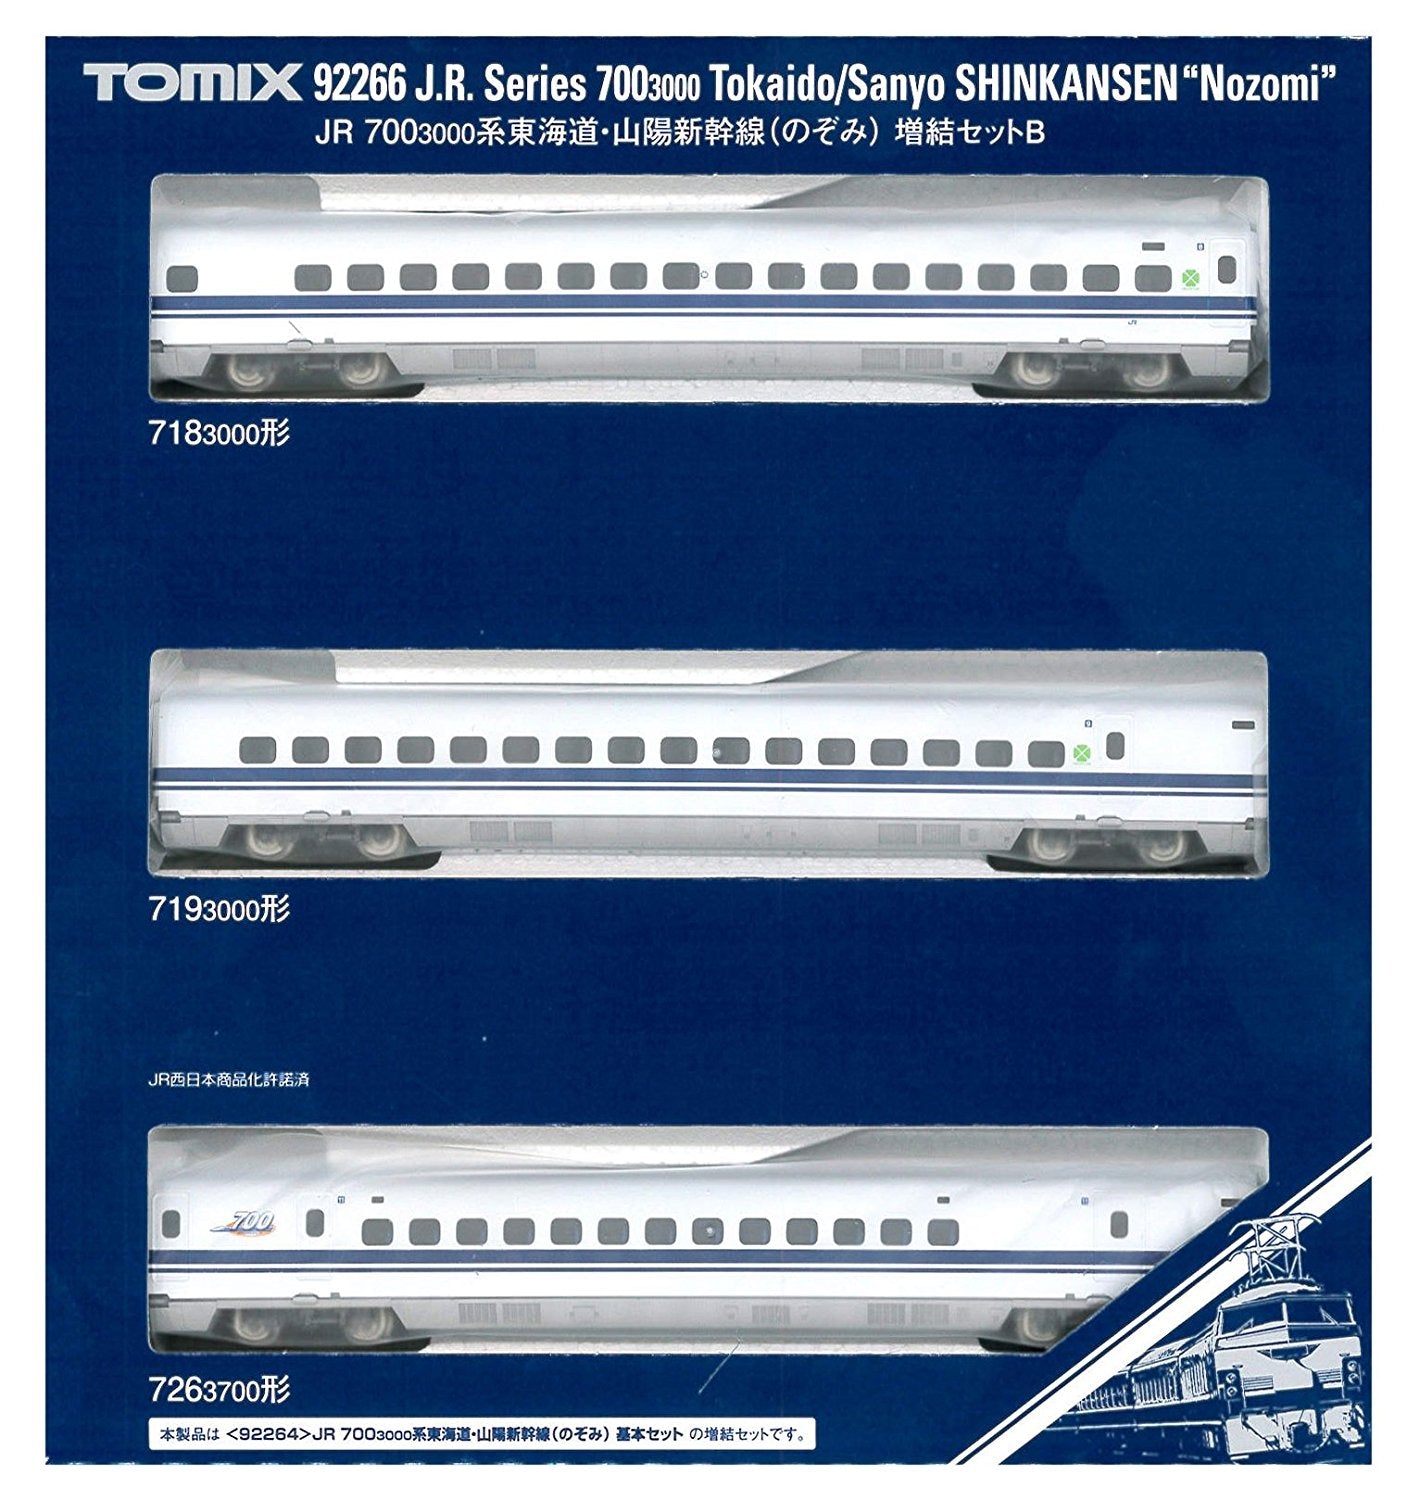 J.R. Series 700-3000 Tokaido/Sanyo Shinkansen `Nozomi` (3 car)